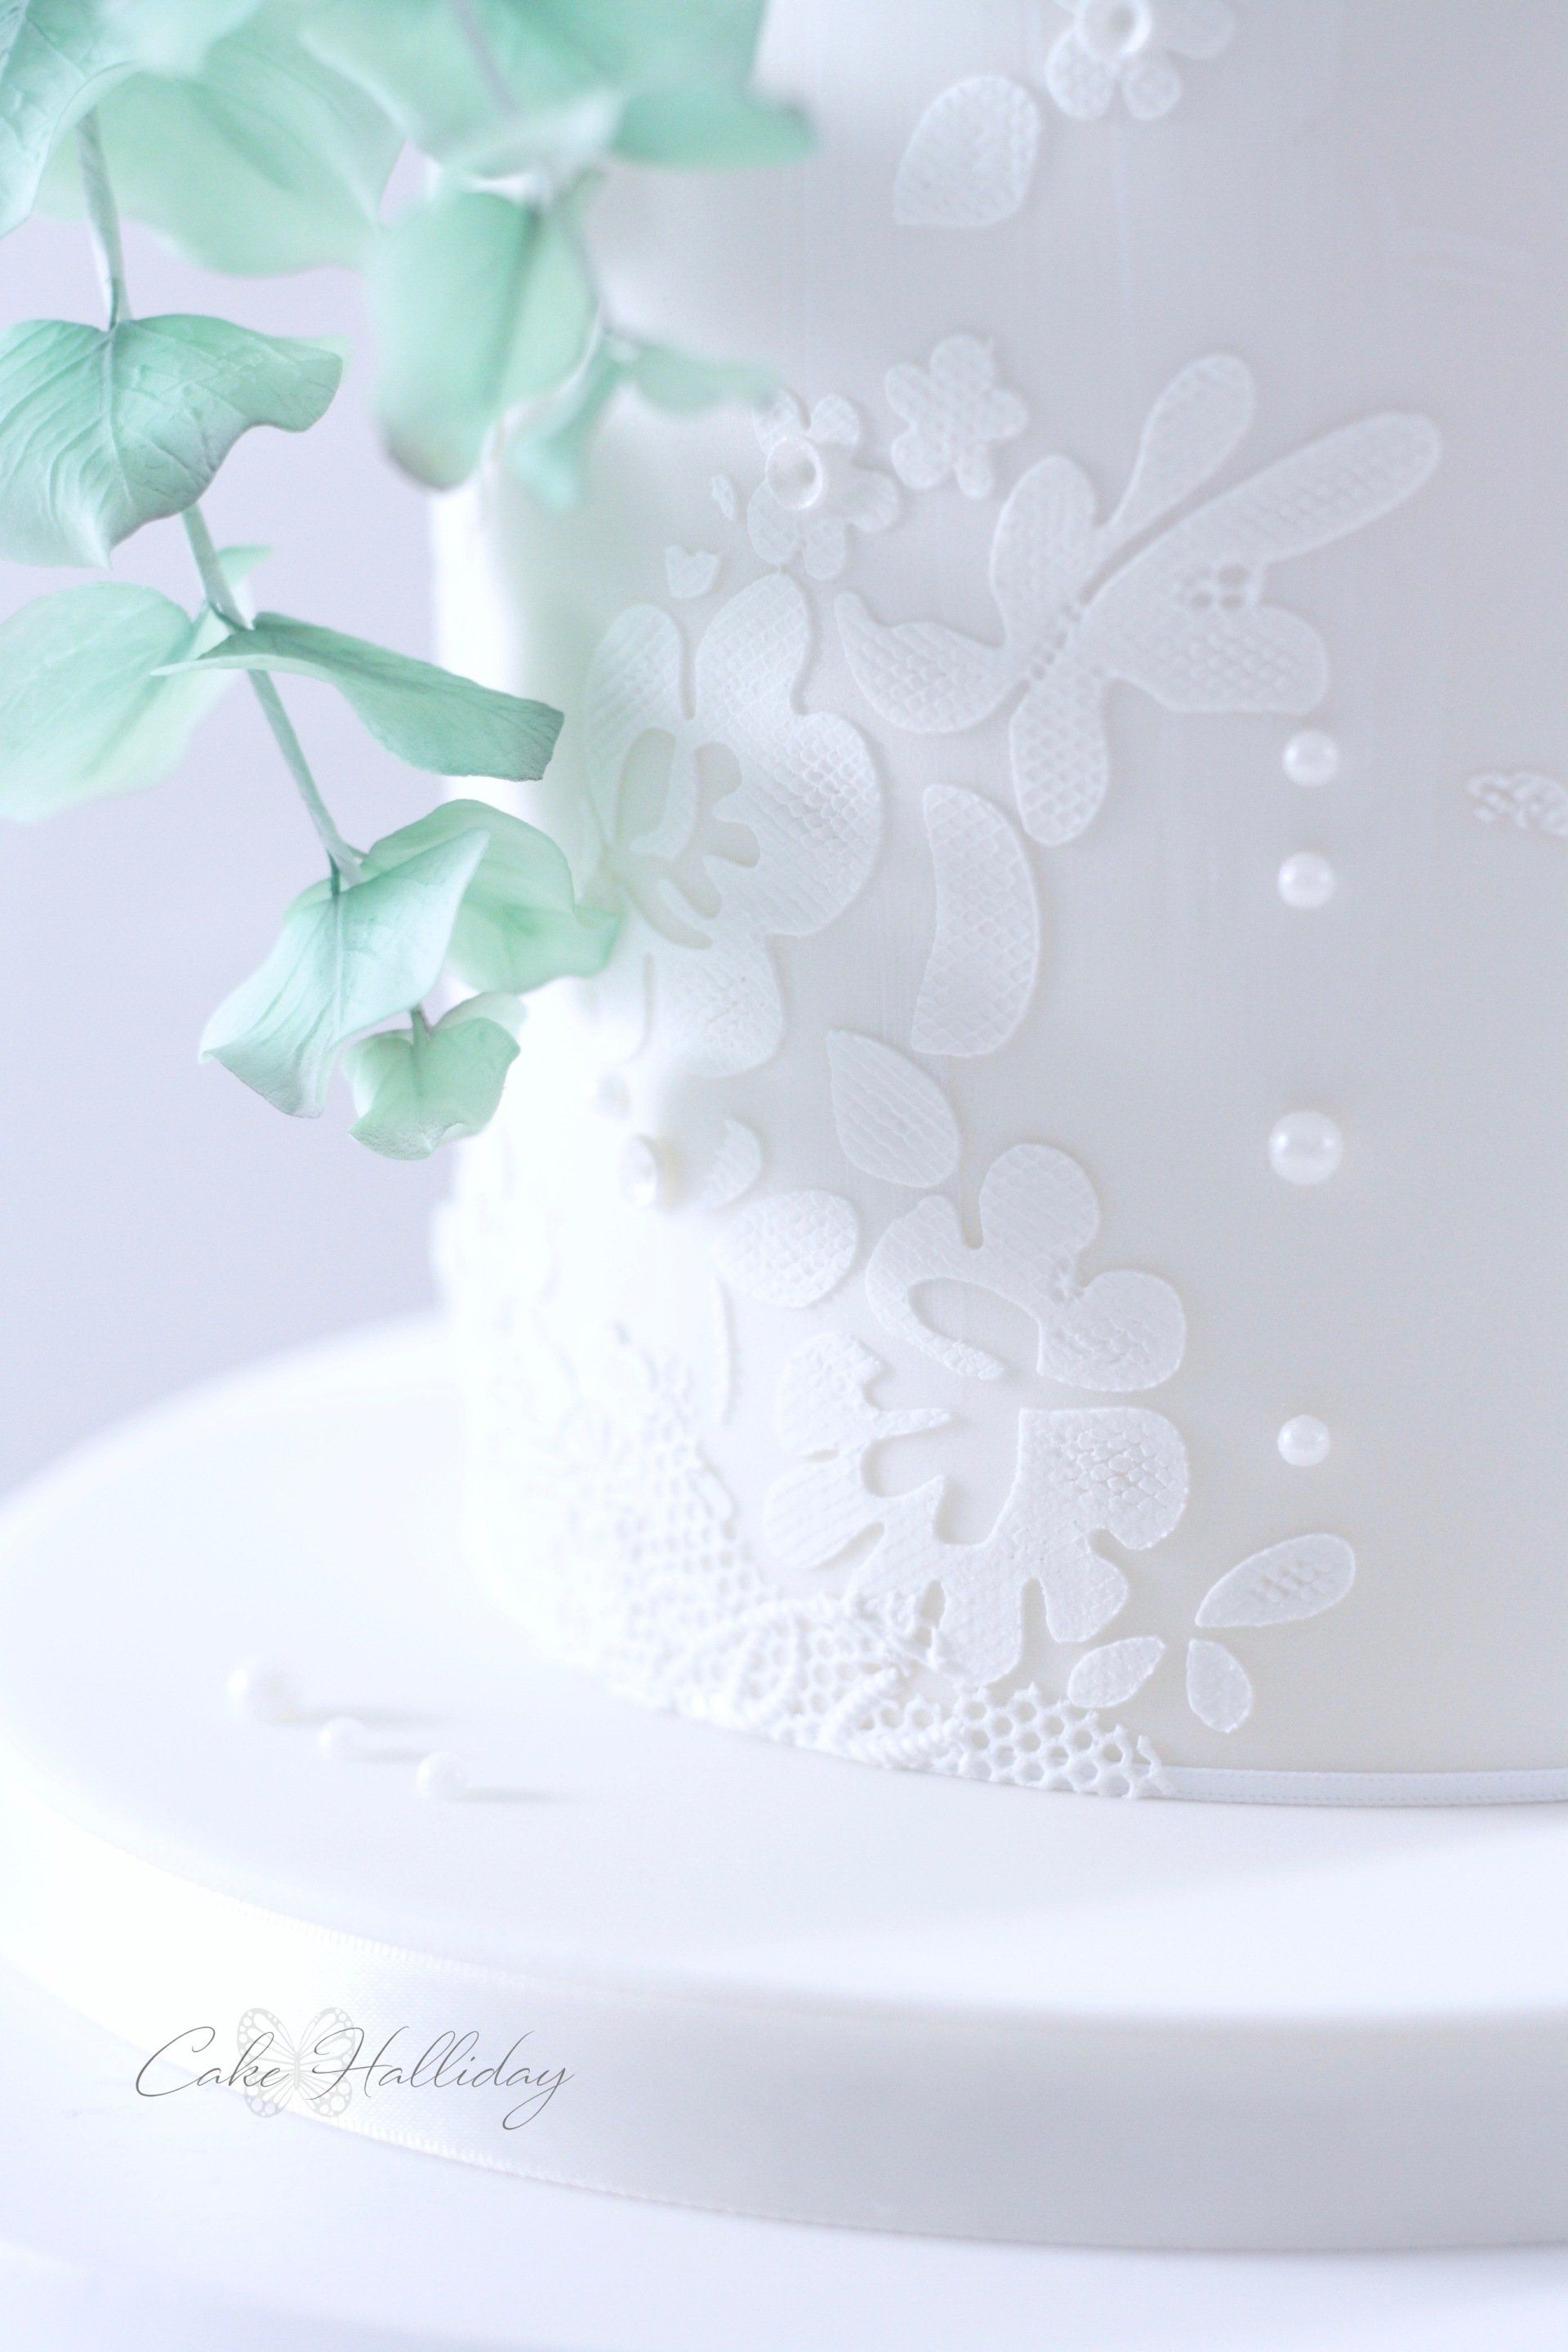 Lace effect wedding cake